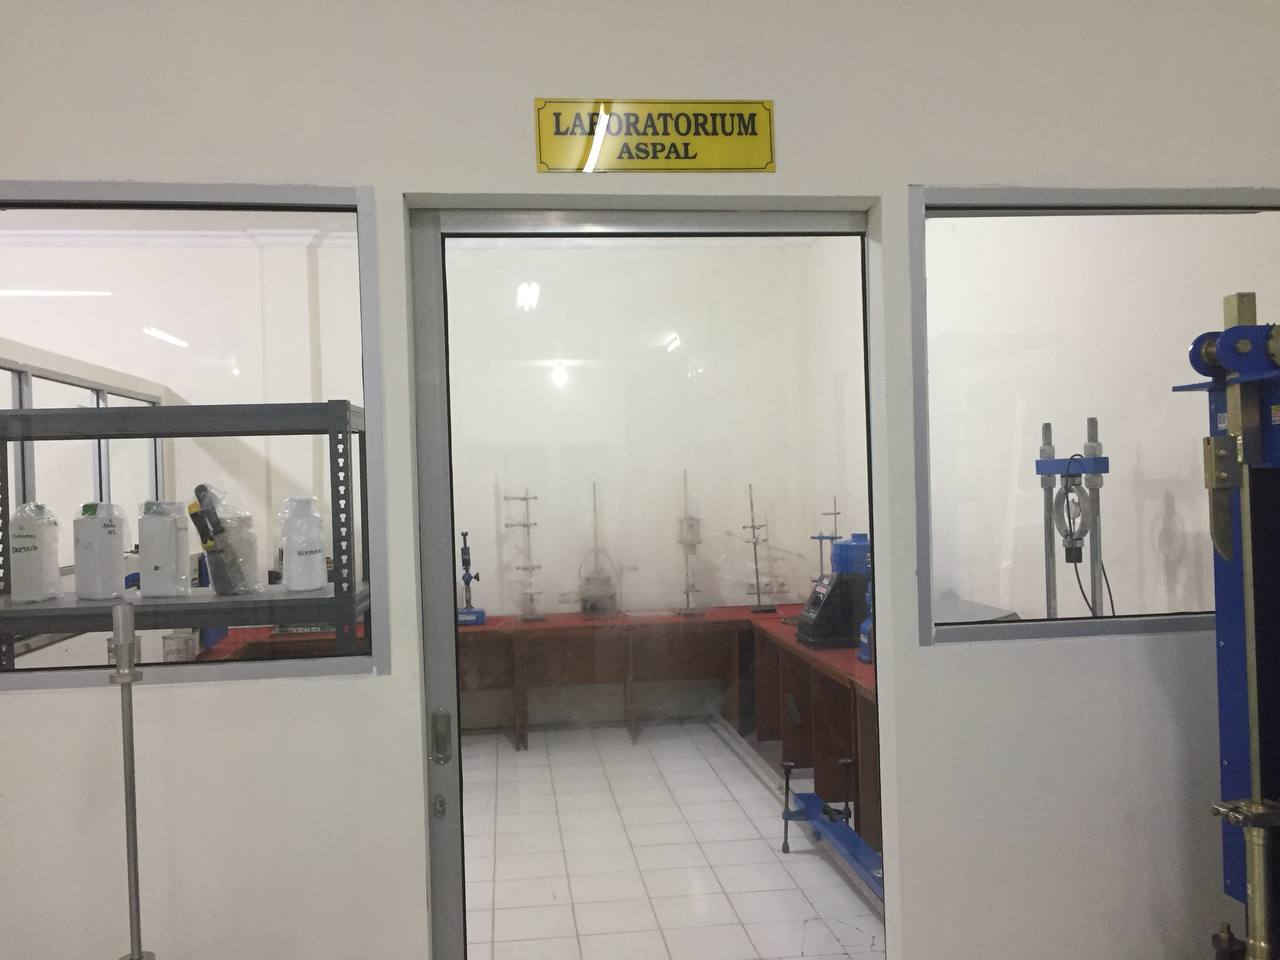 Laboratorium Aspal